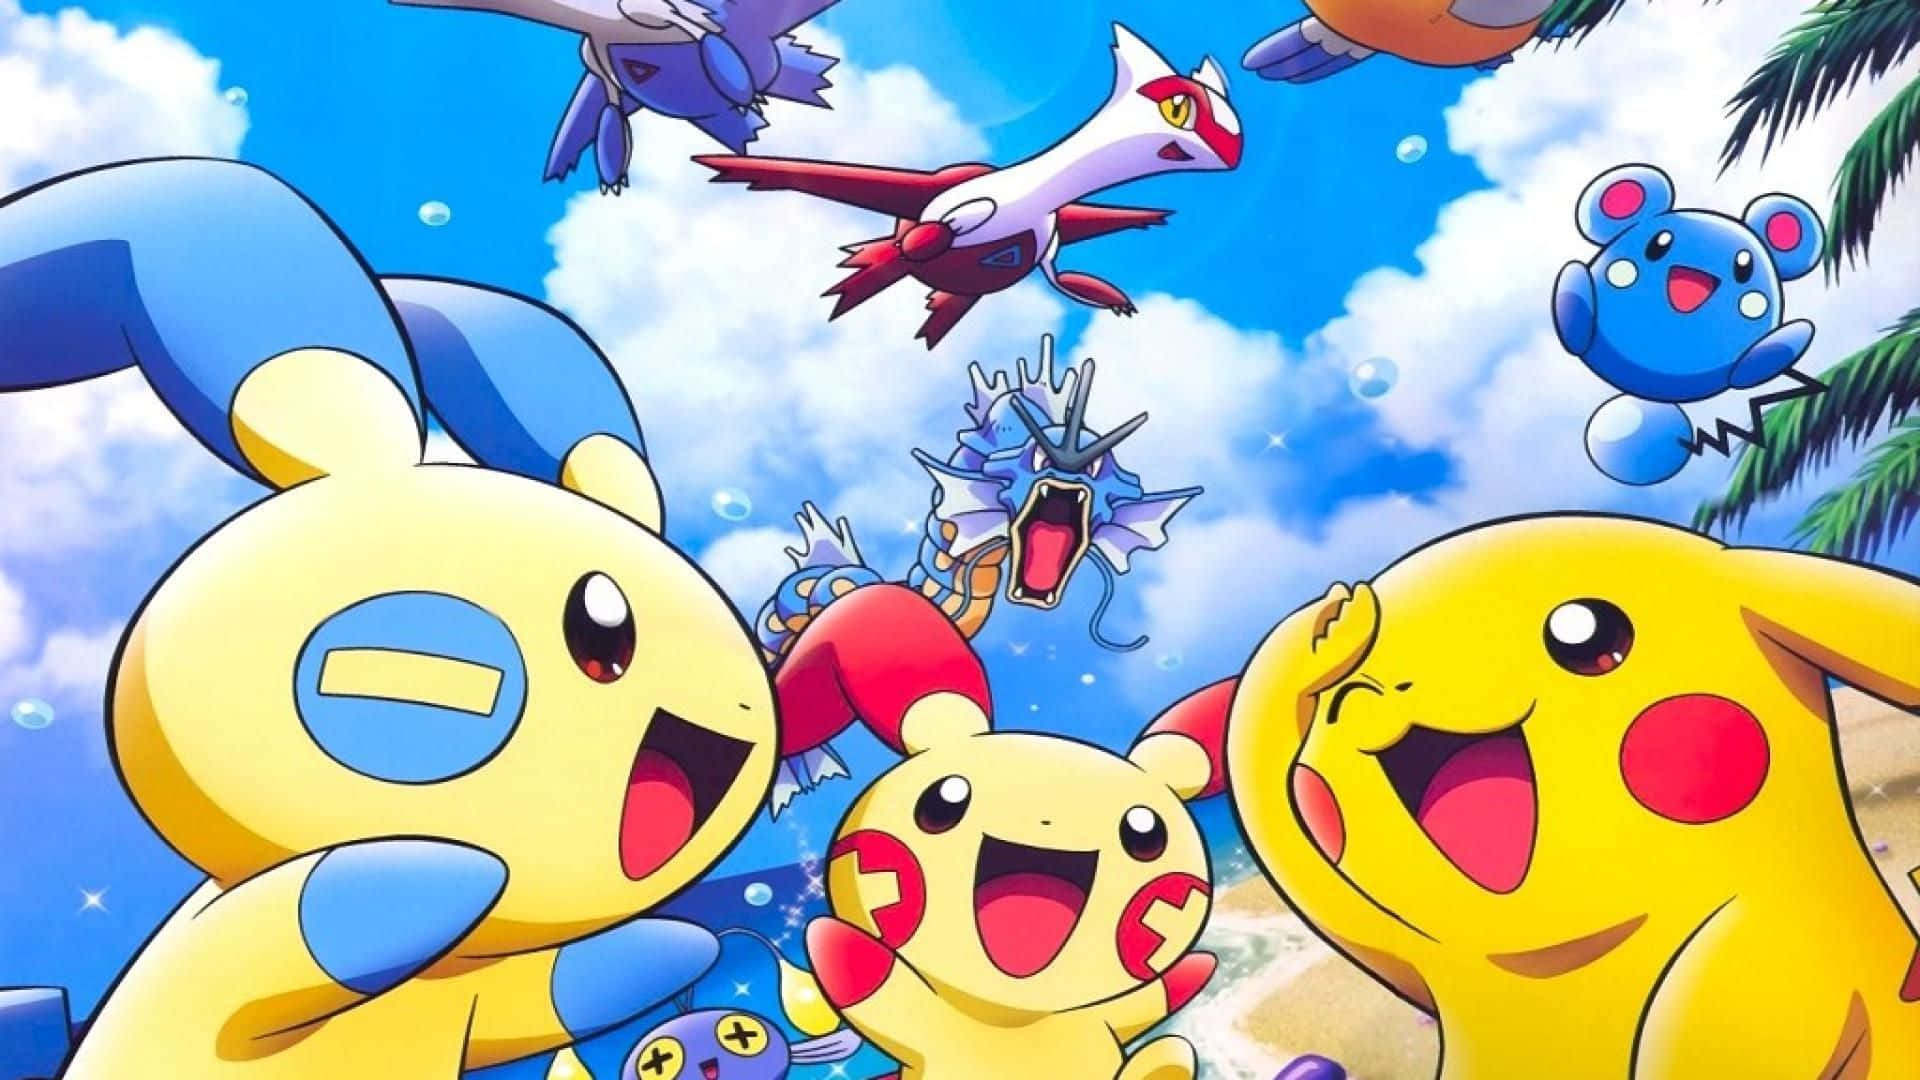 Pokemon Xy - Pikachu - Pikachu - Pikachu - Pikachu - Background